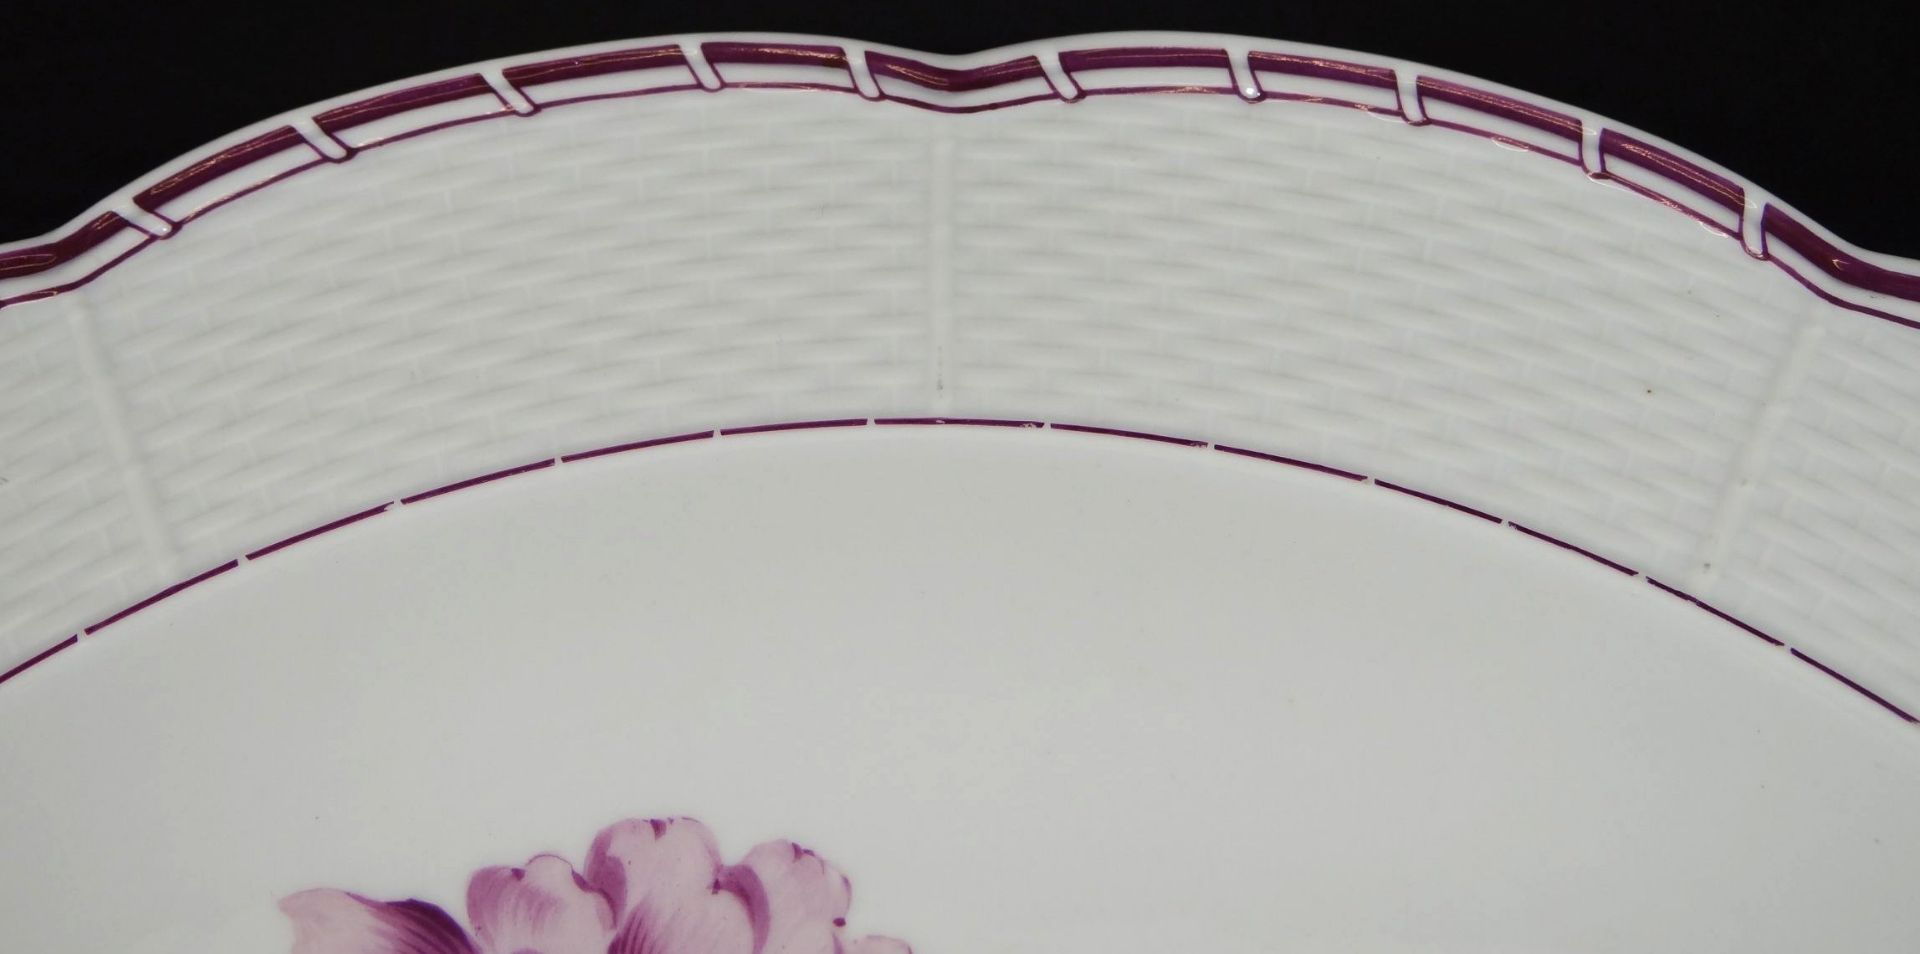 gr. Tortenplatte mit lila Blumen "Meissen" Schwertermarke mit Punkt, 1.Wahl, D-37 cm - Bild 3 aus 4